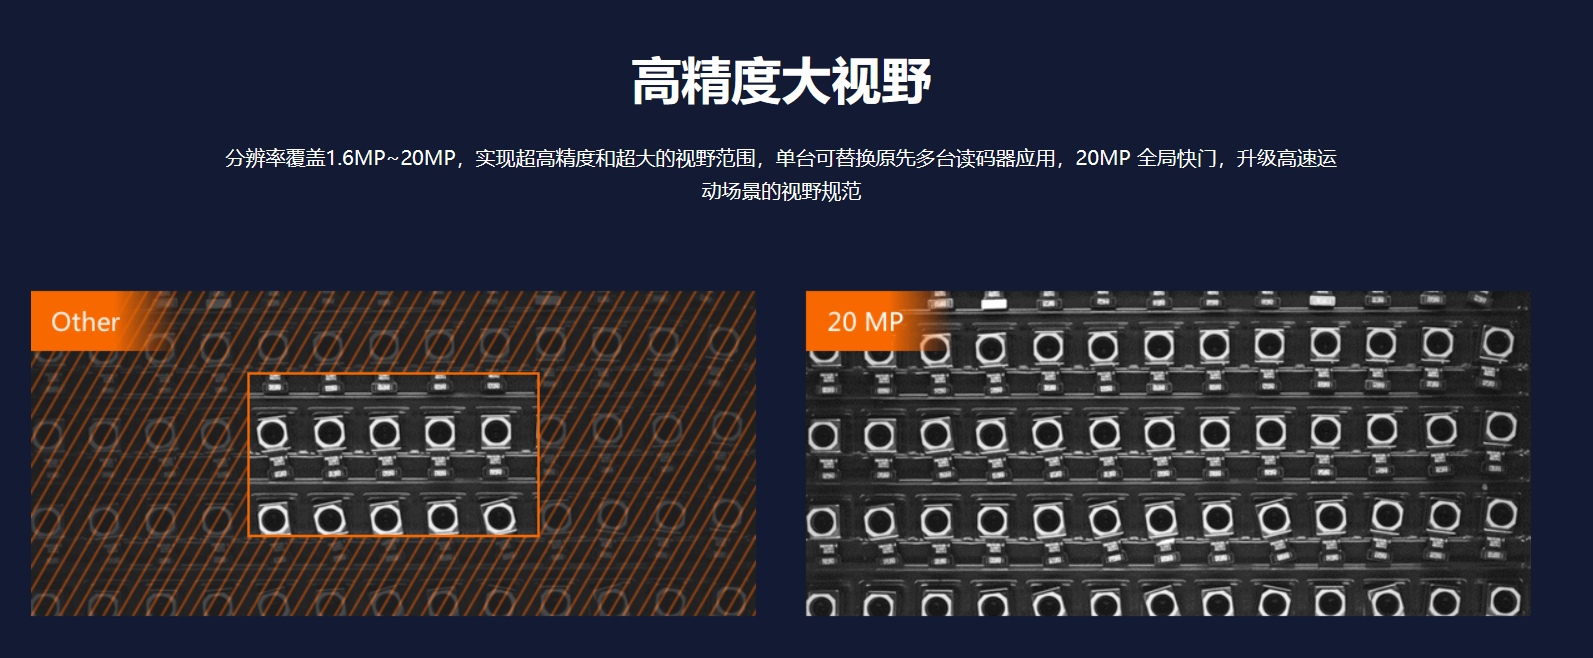 智能读码丨海康ID5000系列 MV-ID5016M 160 万像素全功能型工业读码器-捷利得(北京)自动化科技有限公司